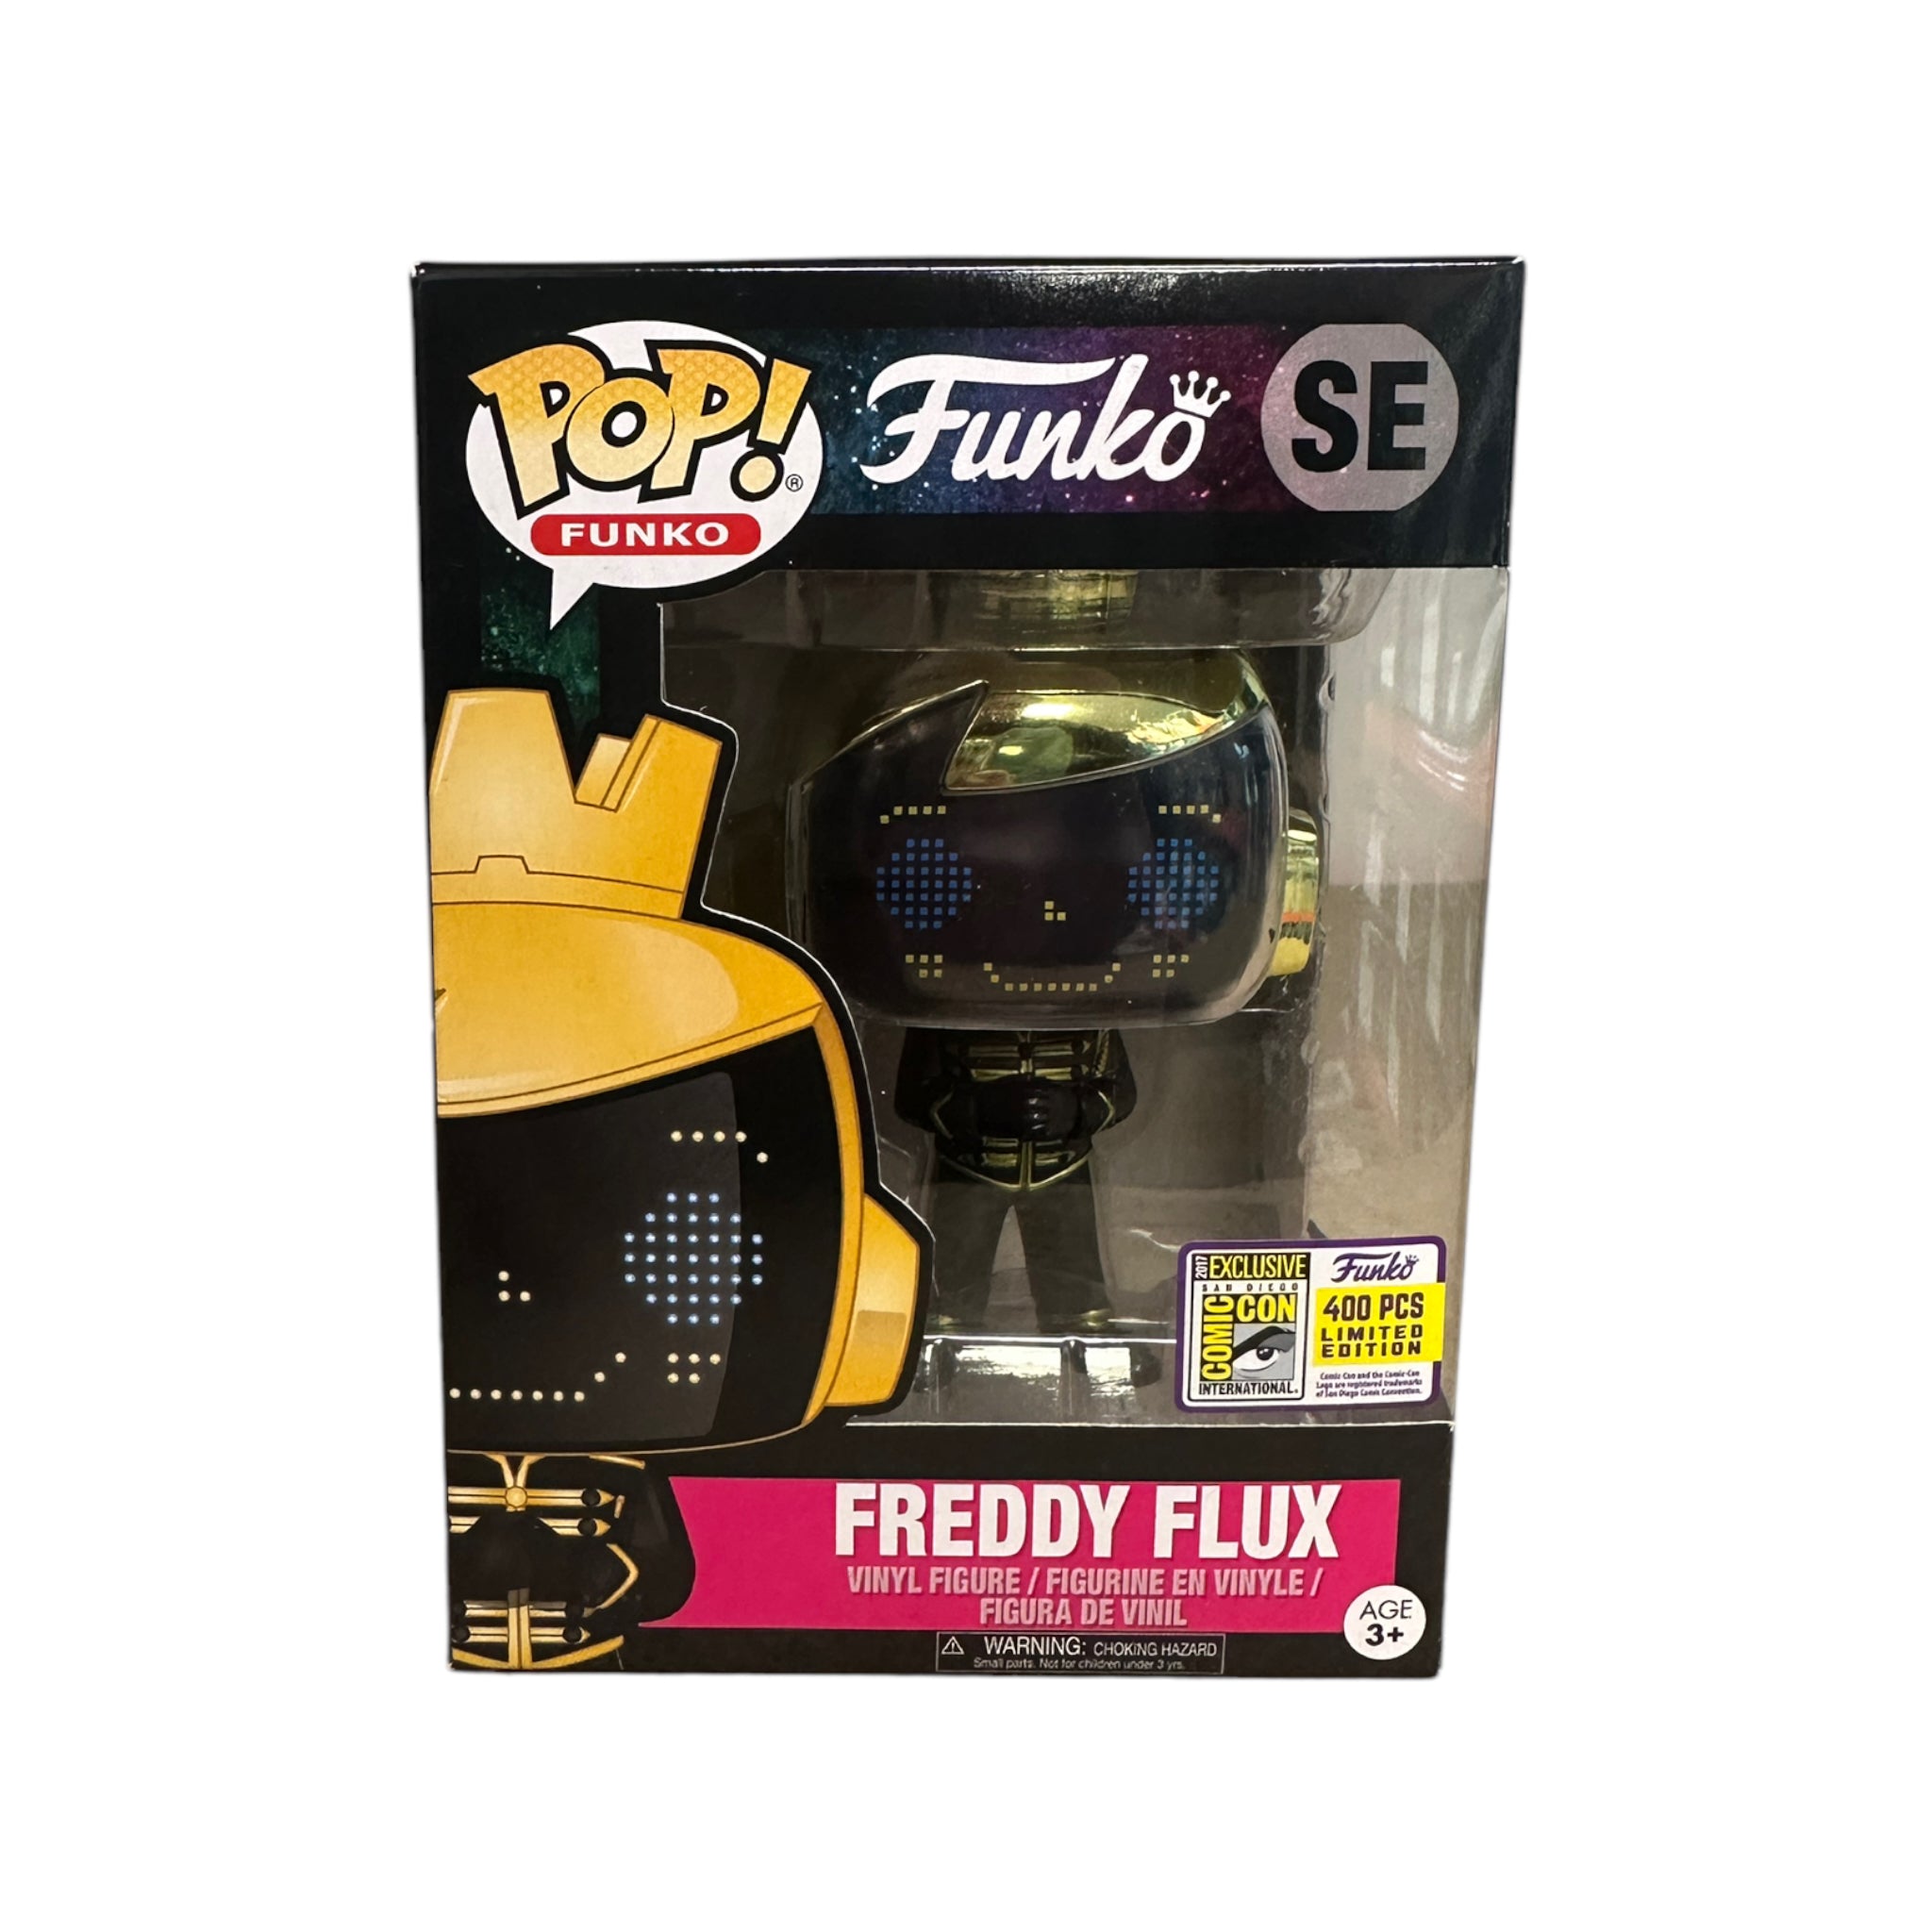 Freddy Flux Photon Smiling Funko Pop! - SDCC 2017 Exclusive LE400 Pcs - Condition 7/10